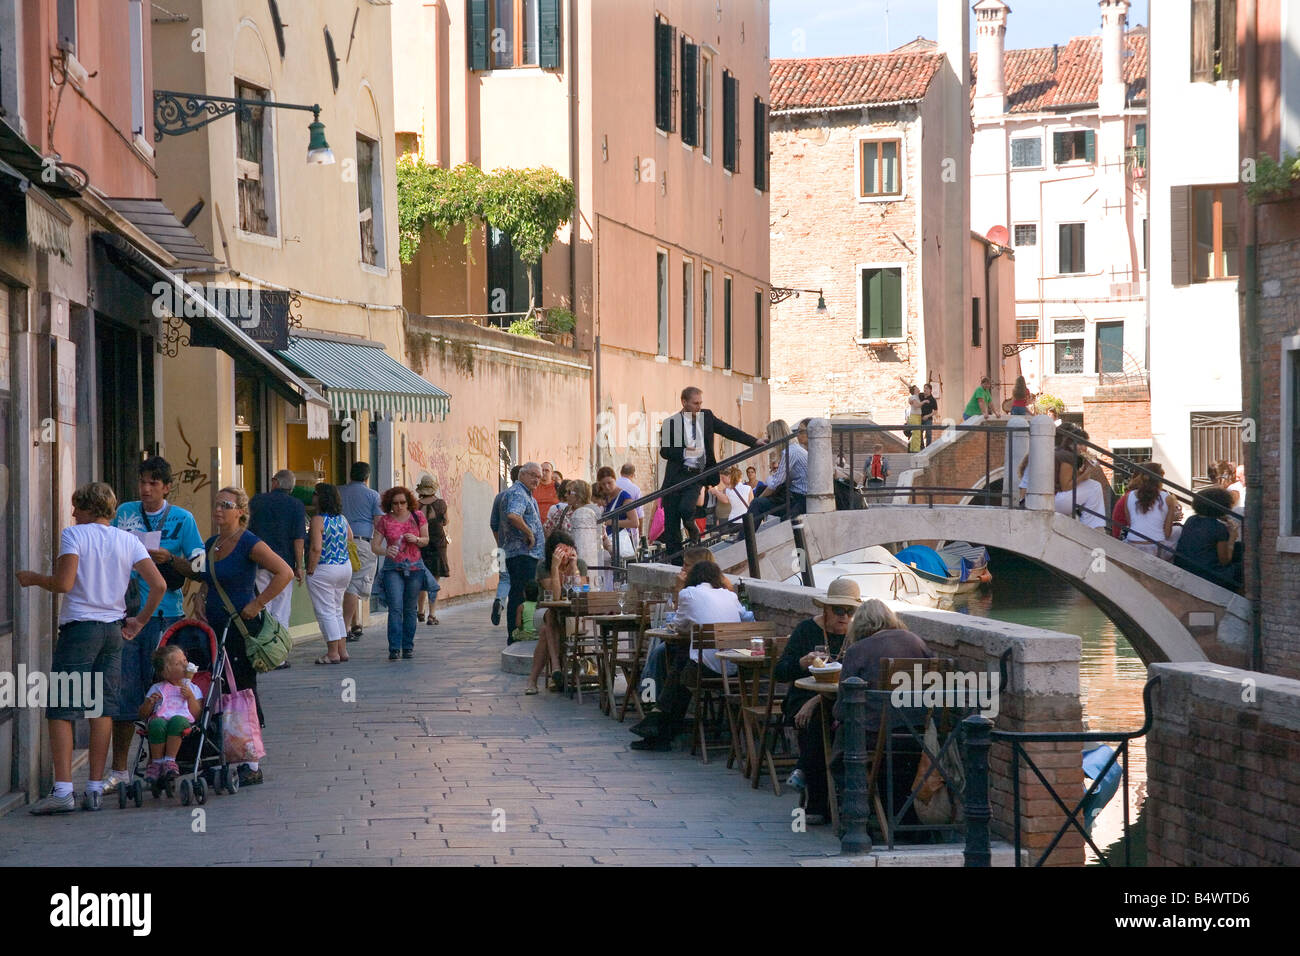 Kühlen und schattigen Nebenstraße imit einem kleinen Café in Venedig Italien Stockfoto